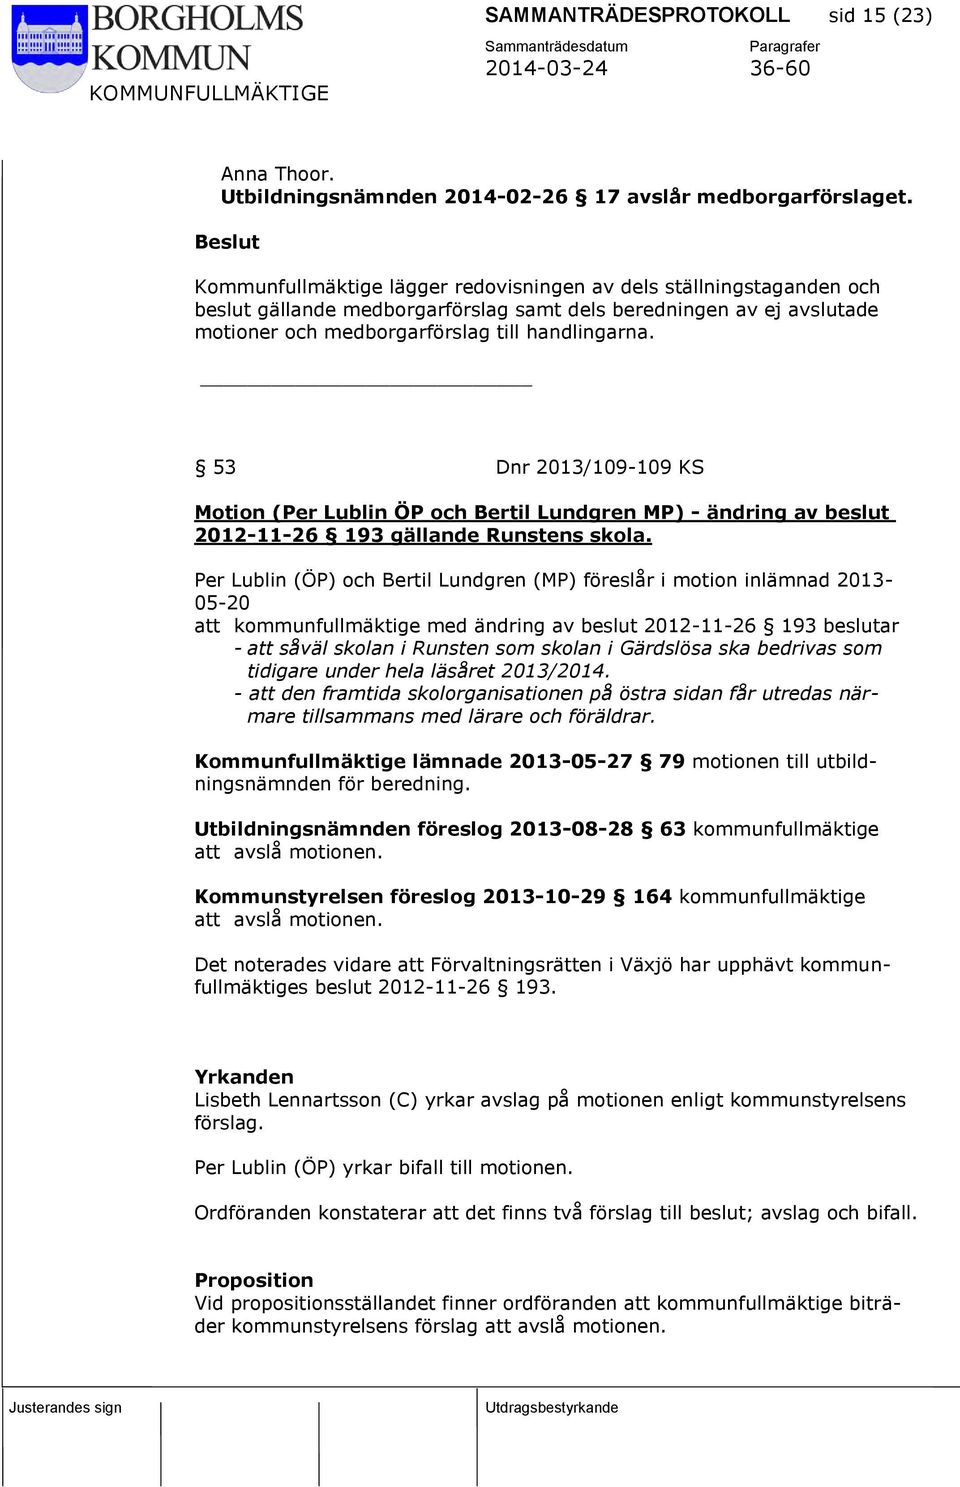 53 Dnr 2013/109-109 KS Motion (Per Lublin ÖP och Bertil Lundgren MP) - ändring av beslut 2012-11-26 193 gällande Runstens skola.